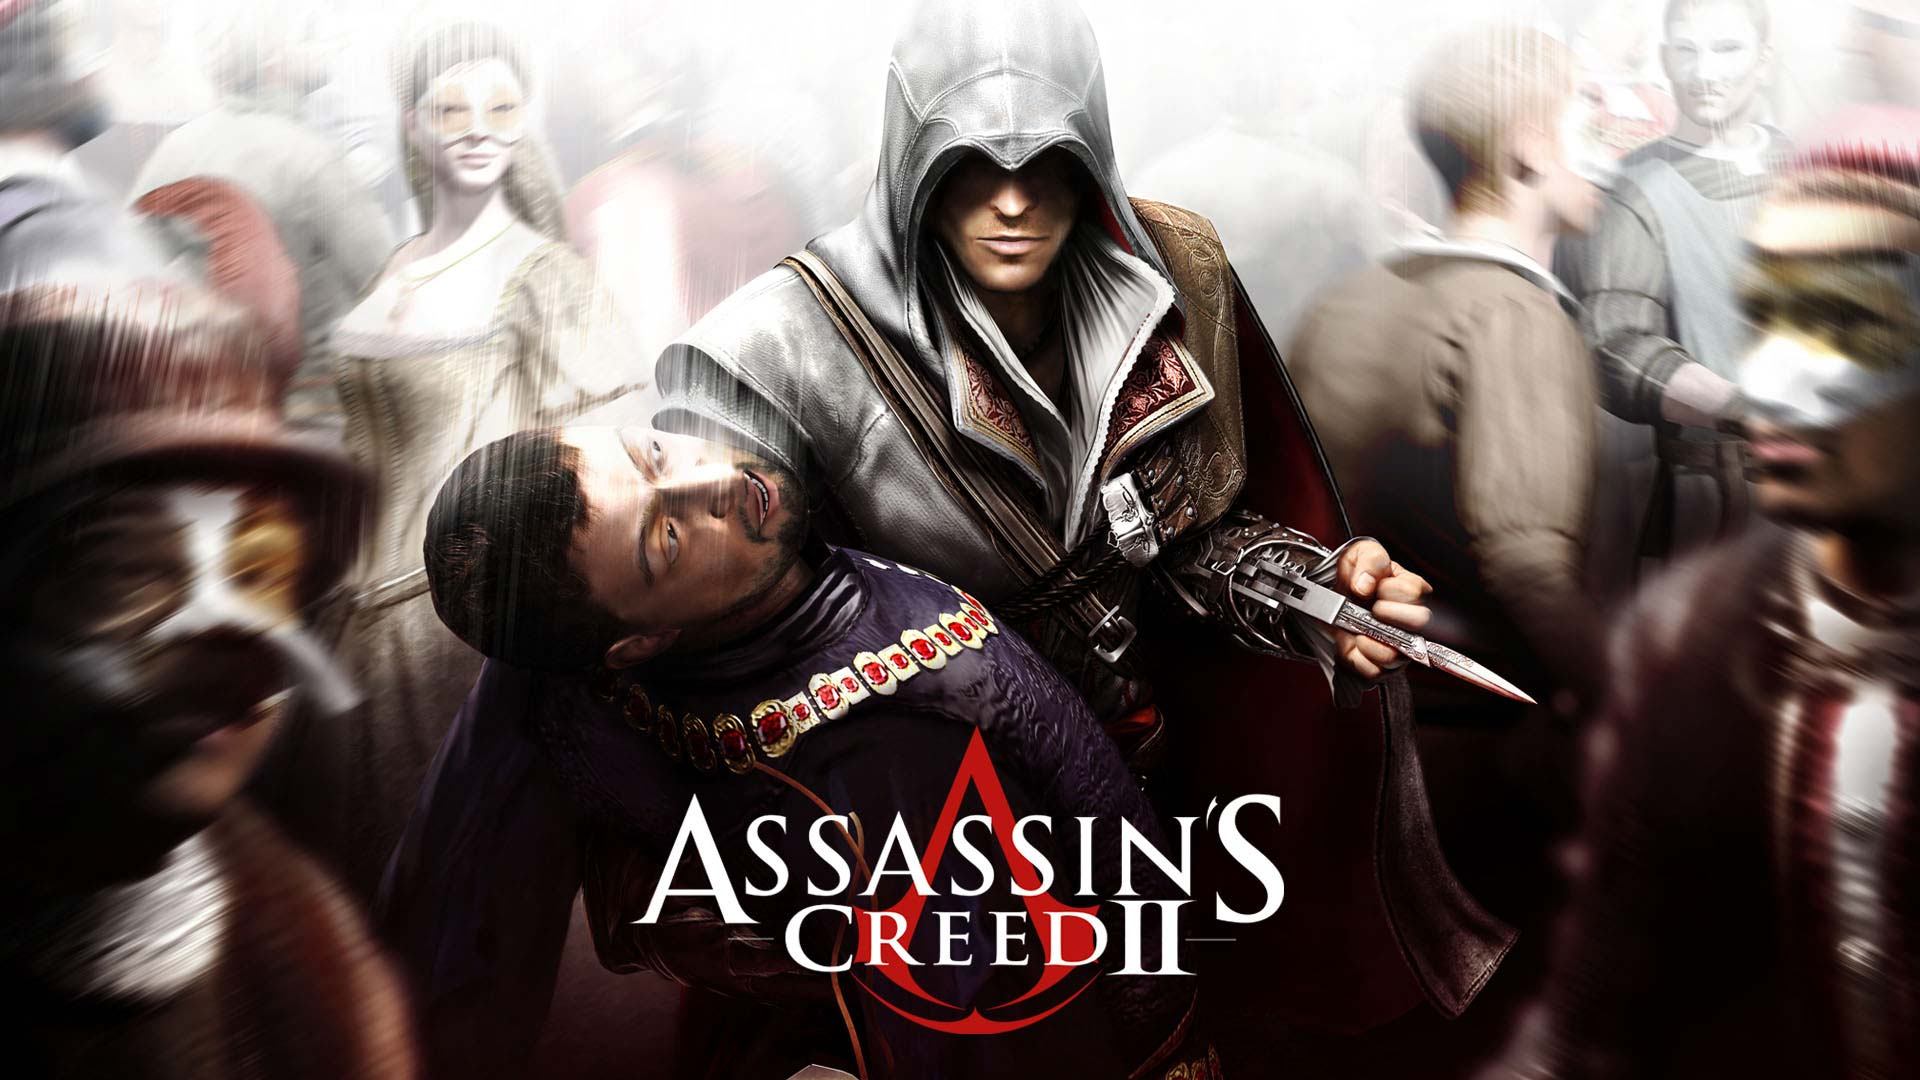 خرید اکانت بازی Assassins Creed II | با قابلیت تغییر مشخصات